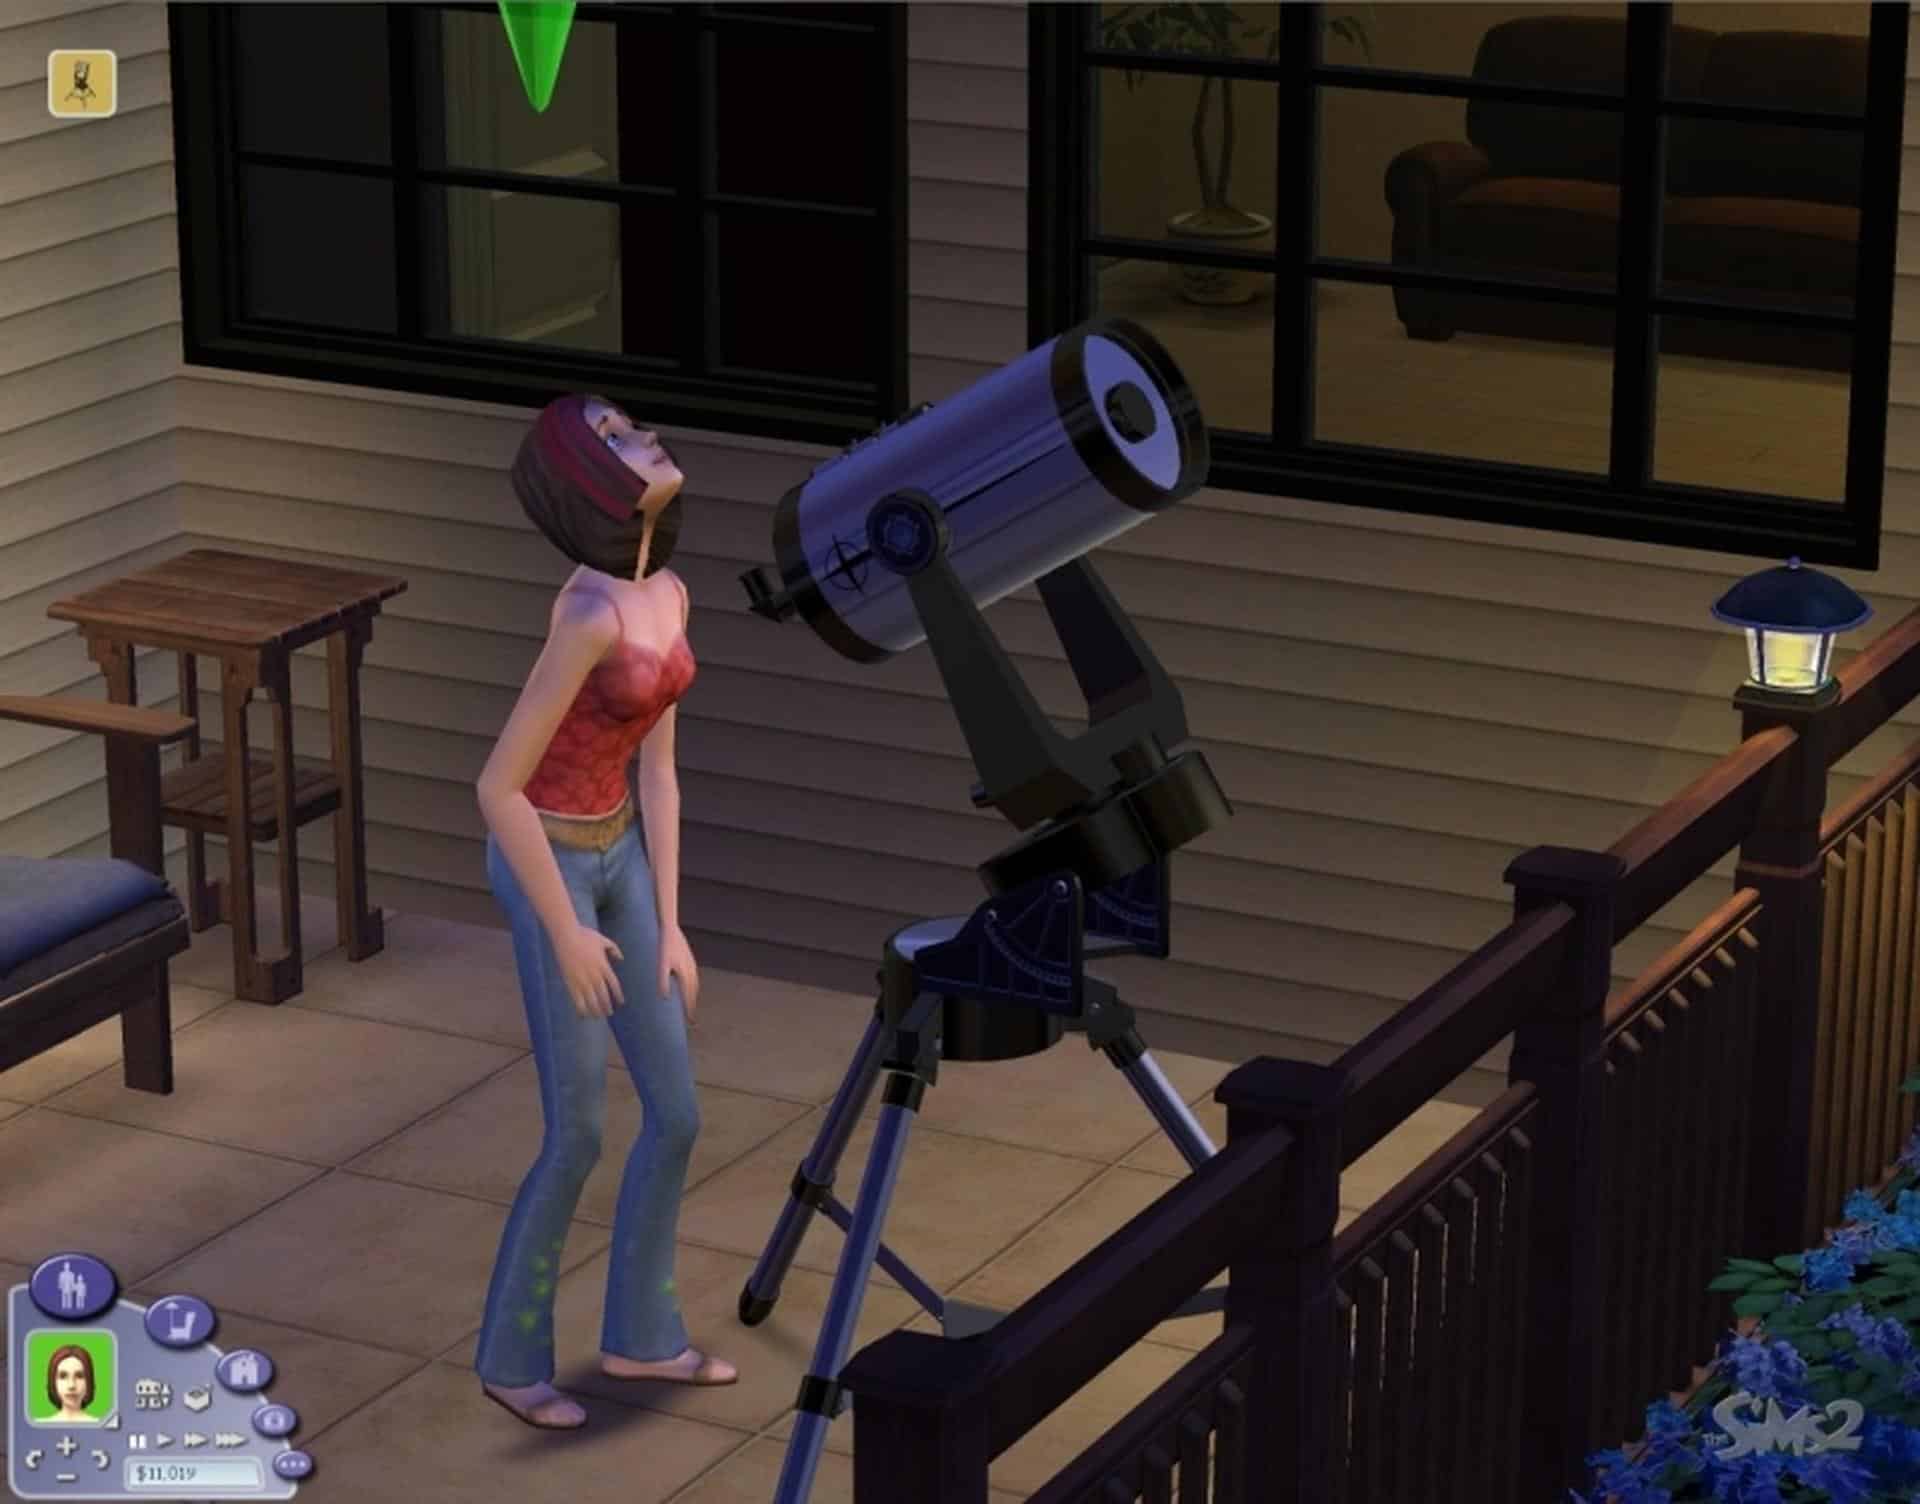 The Sims 2 Spolszczenie Chomikuj